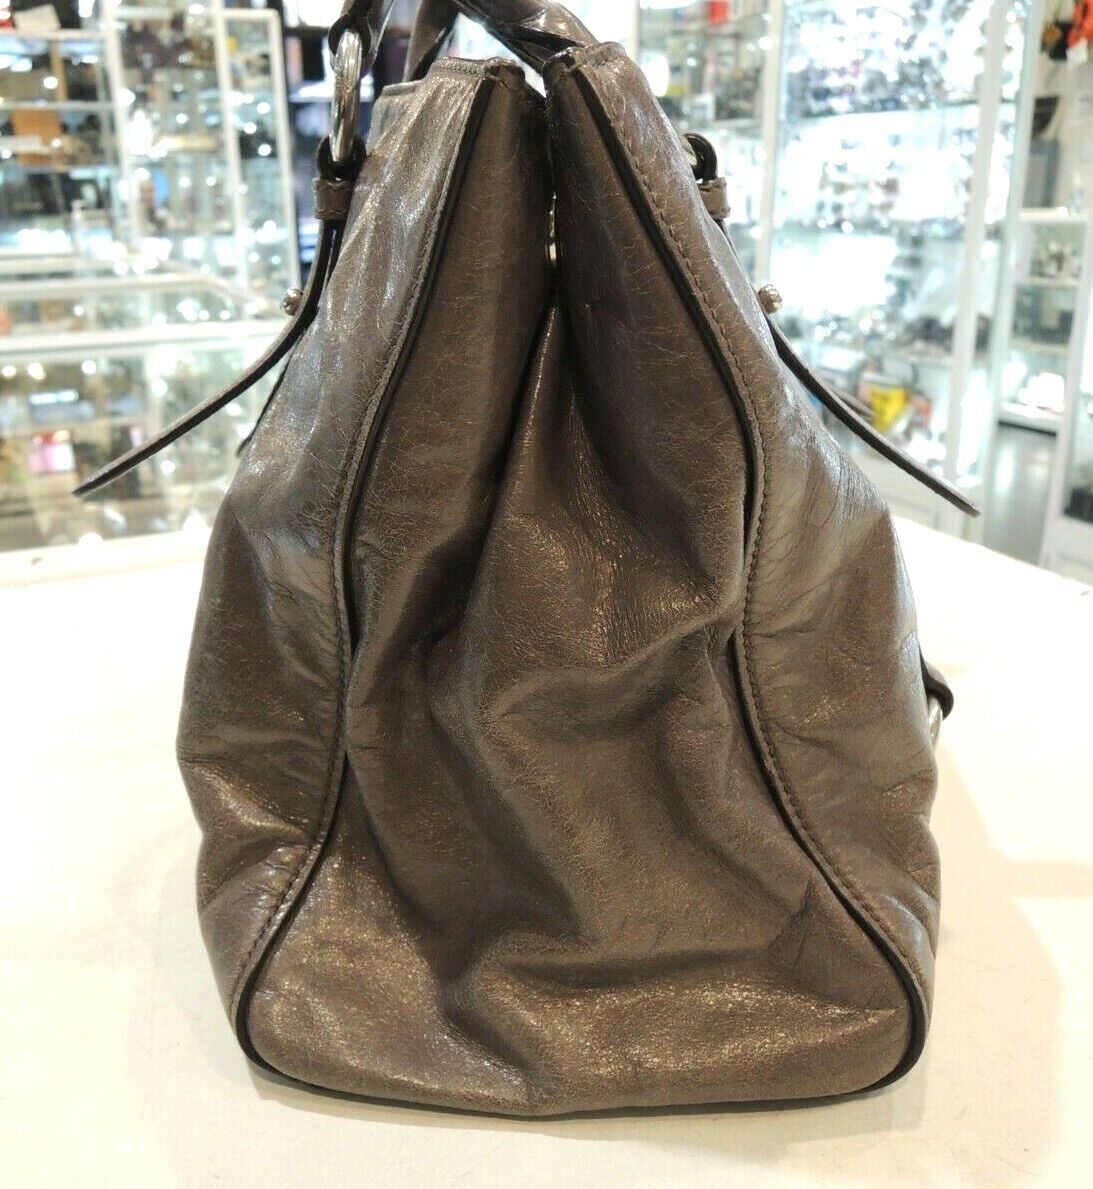 Miu Miu Nocciolo Vitello Shine Leather Shopper Tote Bag in Grey